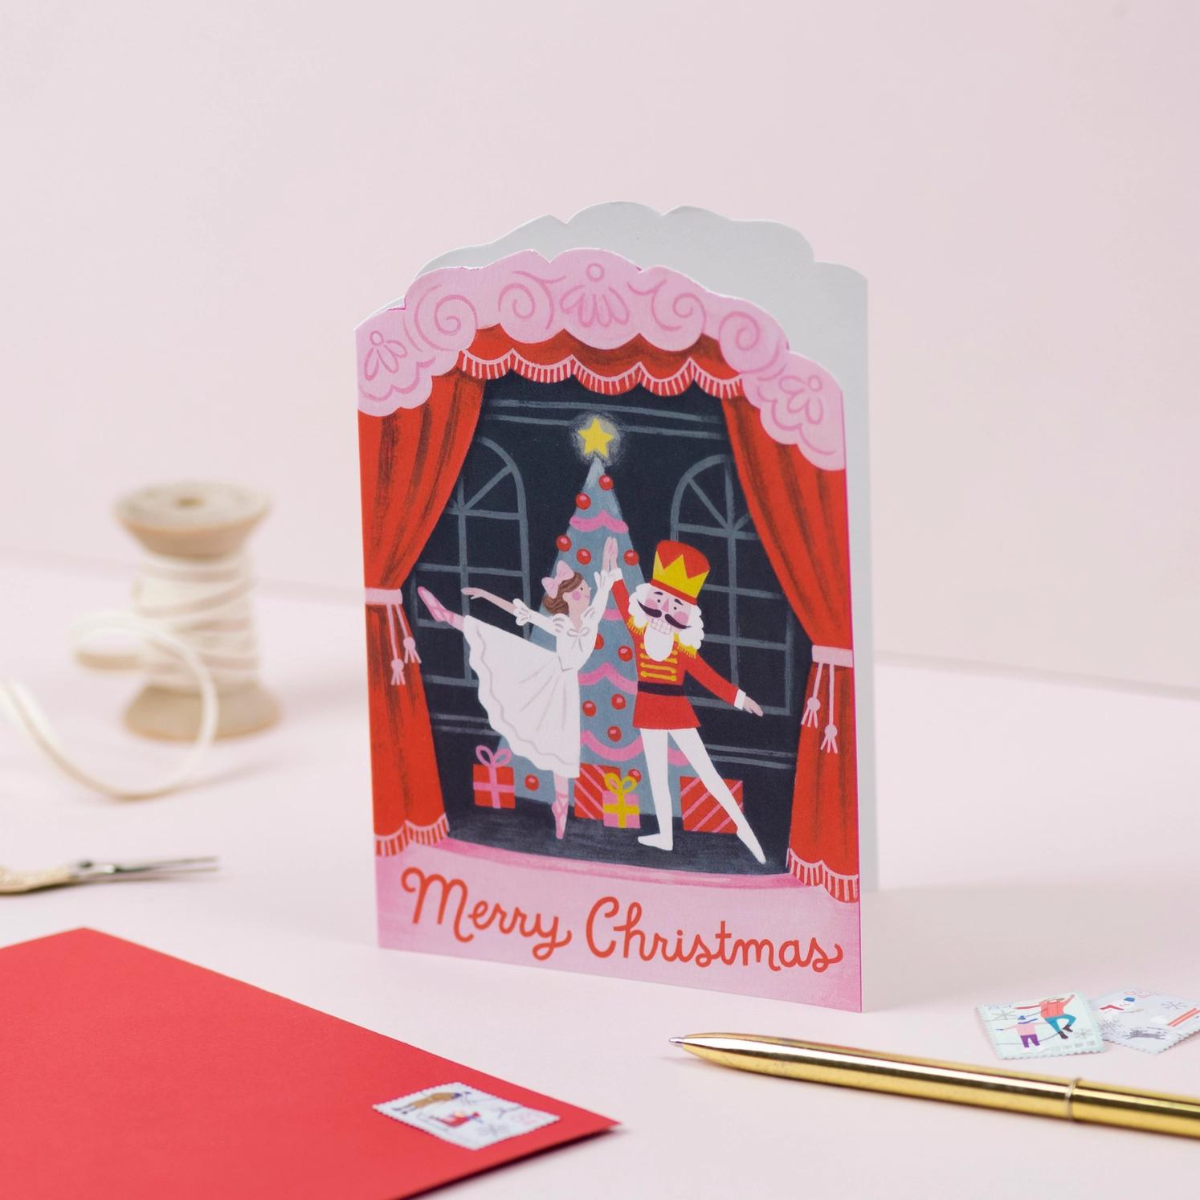 Carte de Noël de Ricicle Cards représentant le ballet de casse noisette. Sur le devant de la carte on peut lire " Merry Christmas ". Livrée avec une enveloppe rouge. 